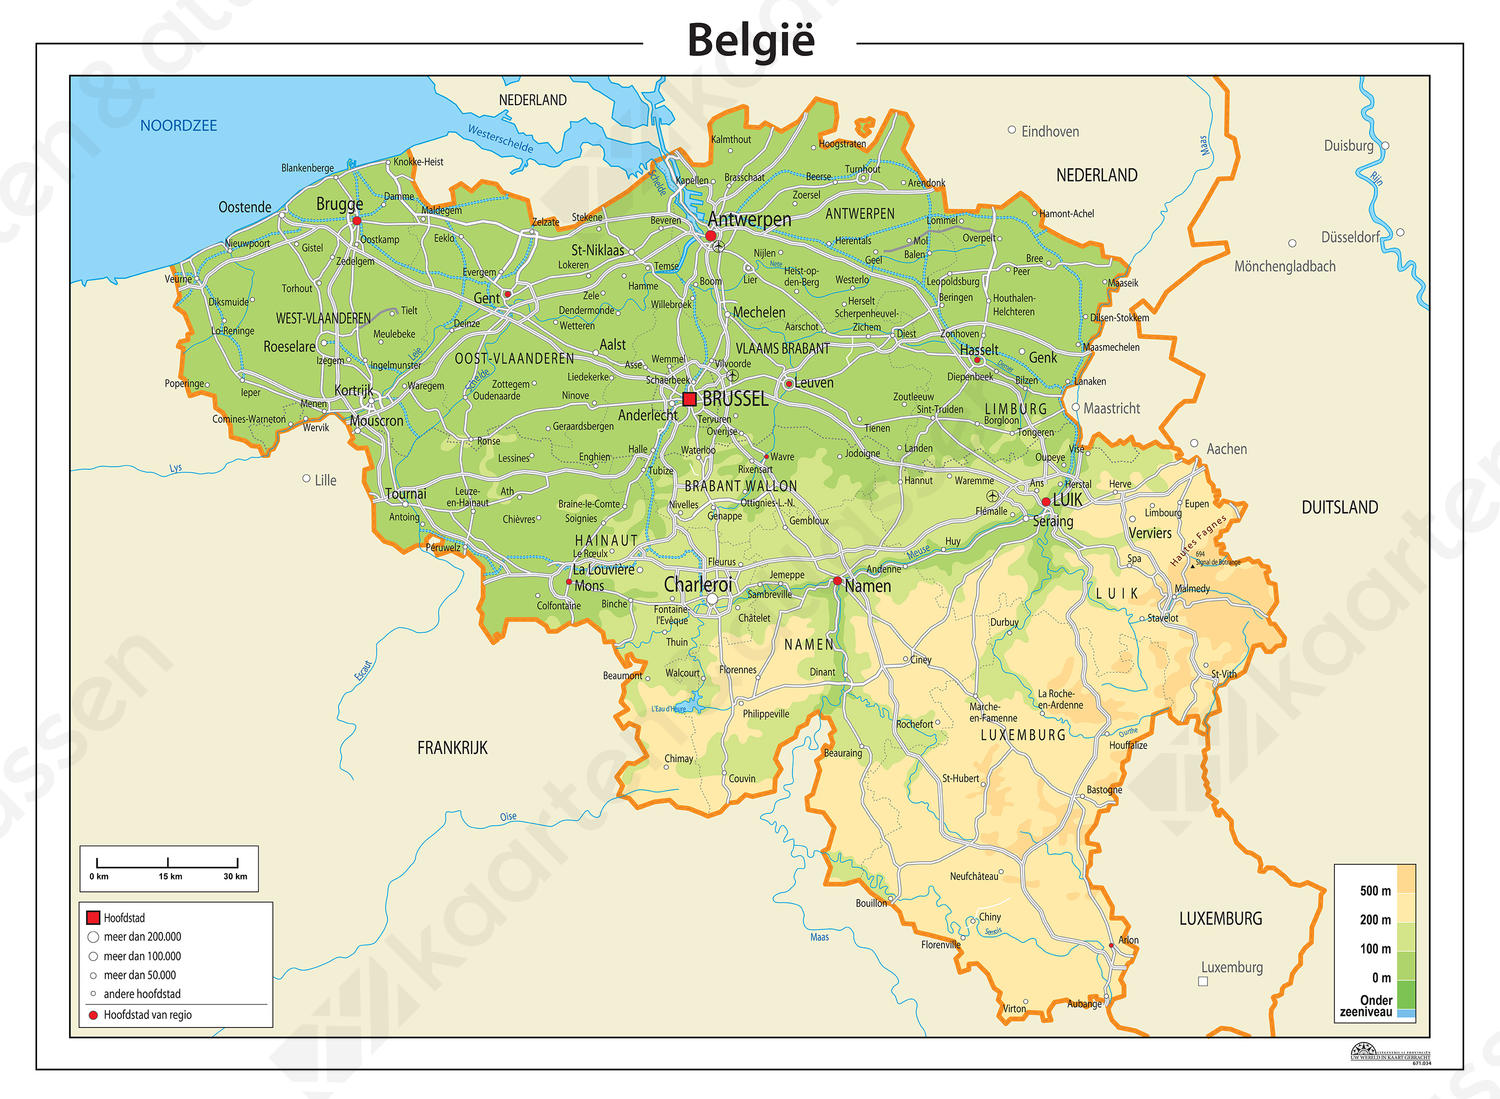 Digitale België kaart Natuurkundig 333 | Kaarten en ...